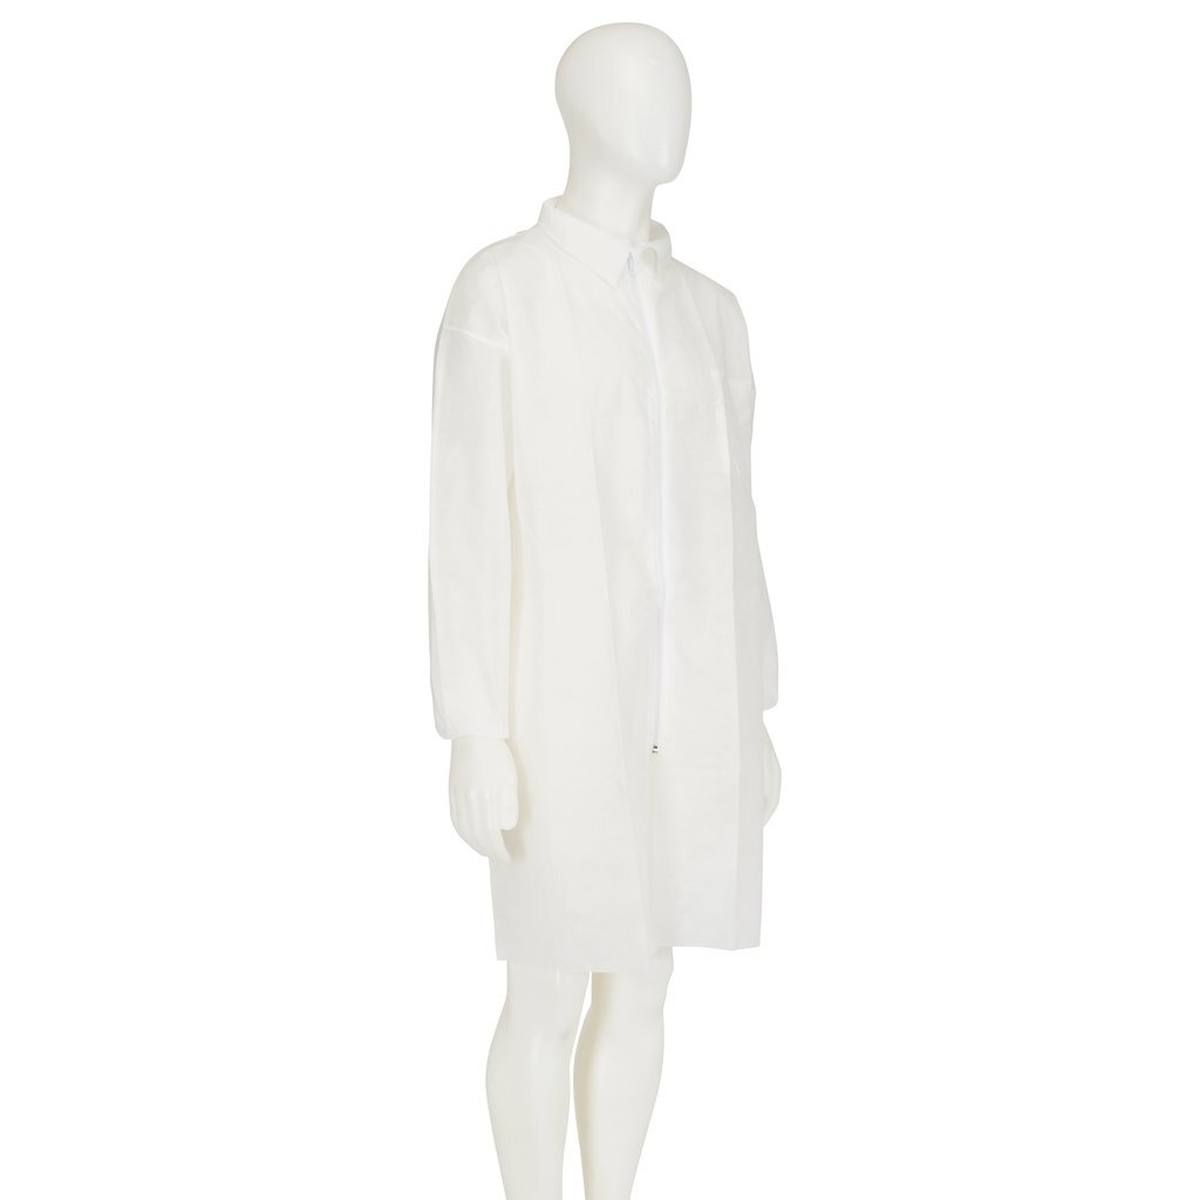 cappotto 3M 4400, bianco, taglia L, materiale 100% polipropilene, traspirante, molto leggero, con chiusura a zip